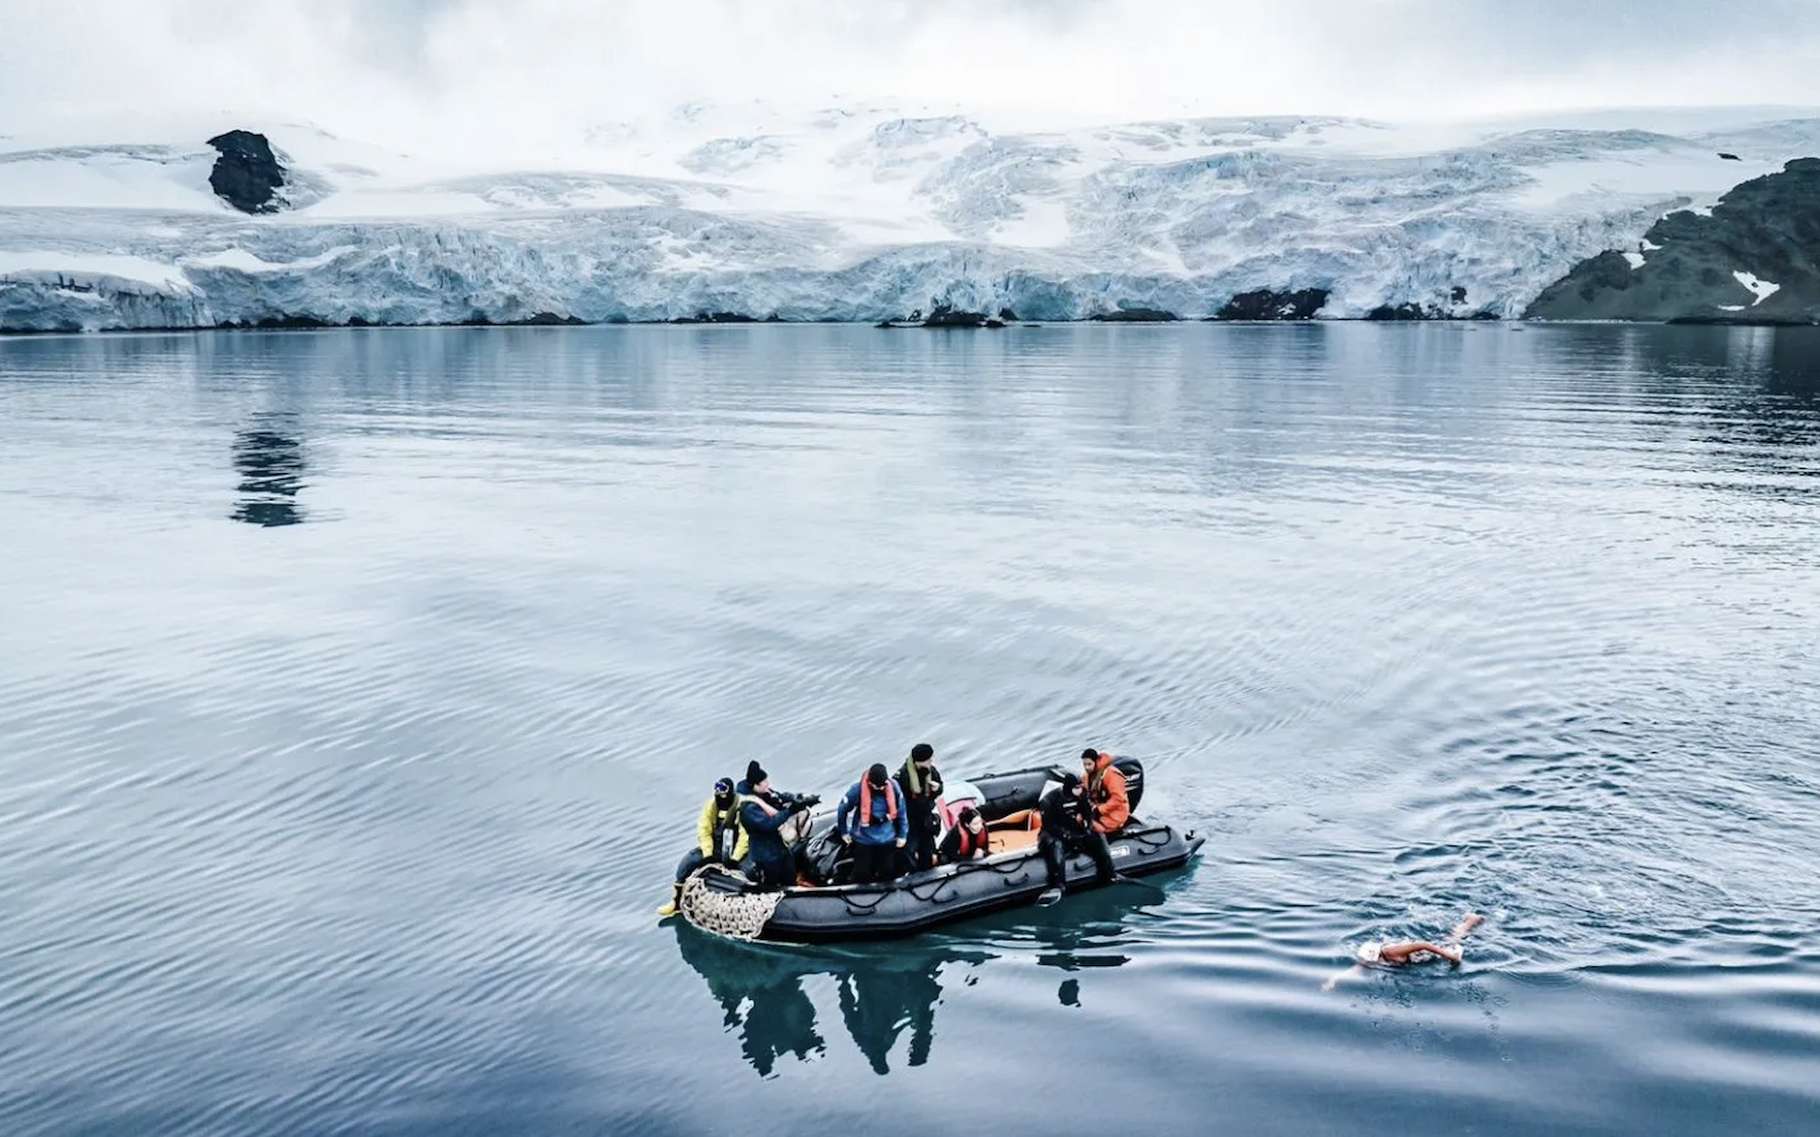 Elle nage plus de 45 minutes dans les eaux glacées de l'Antarctique pour une cause